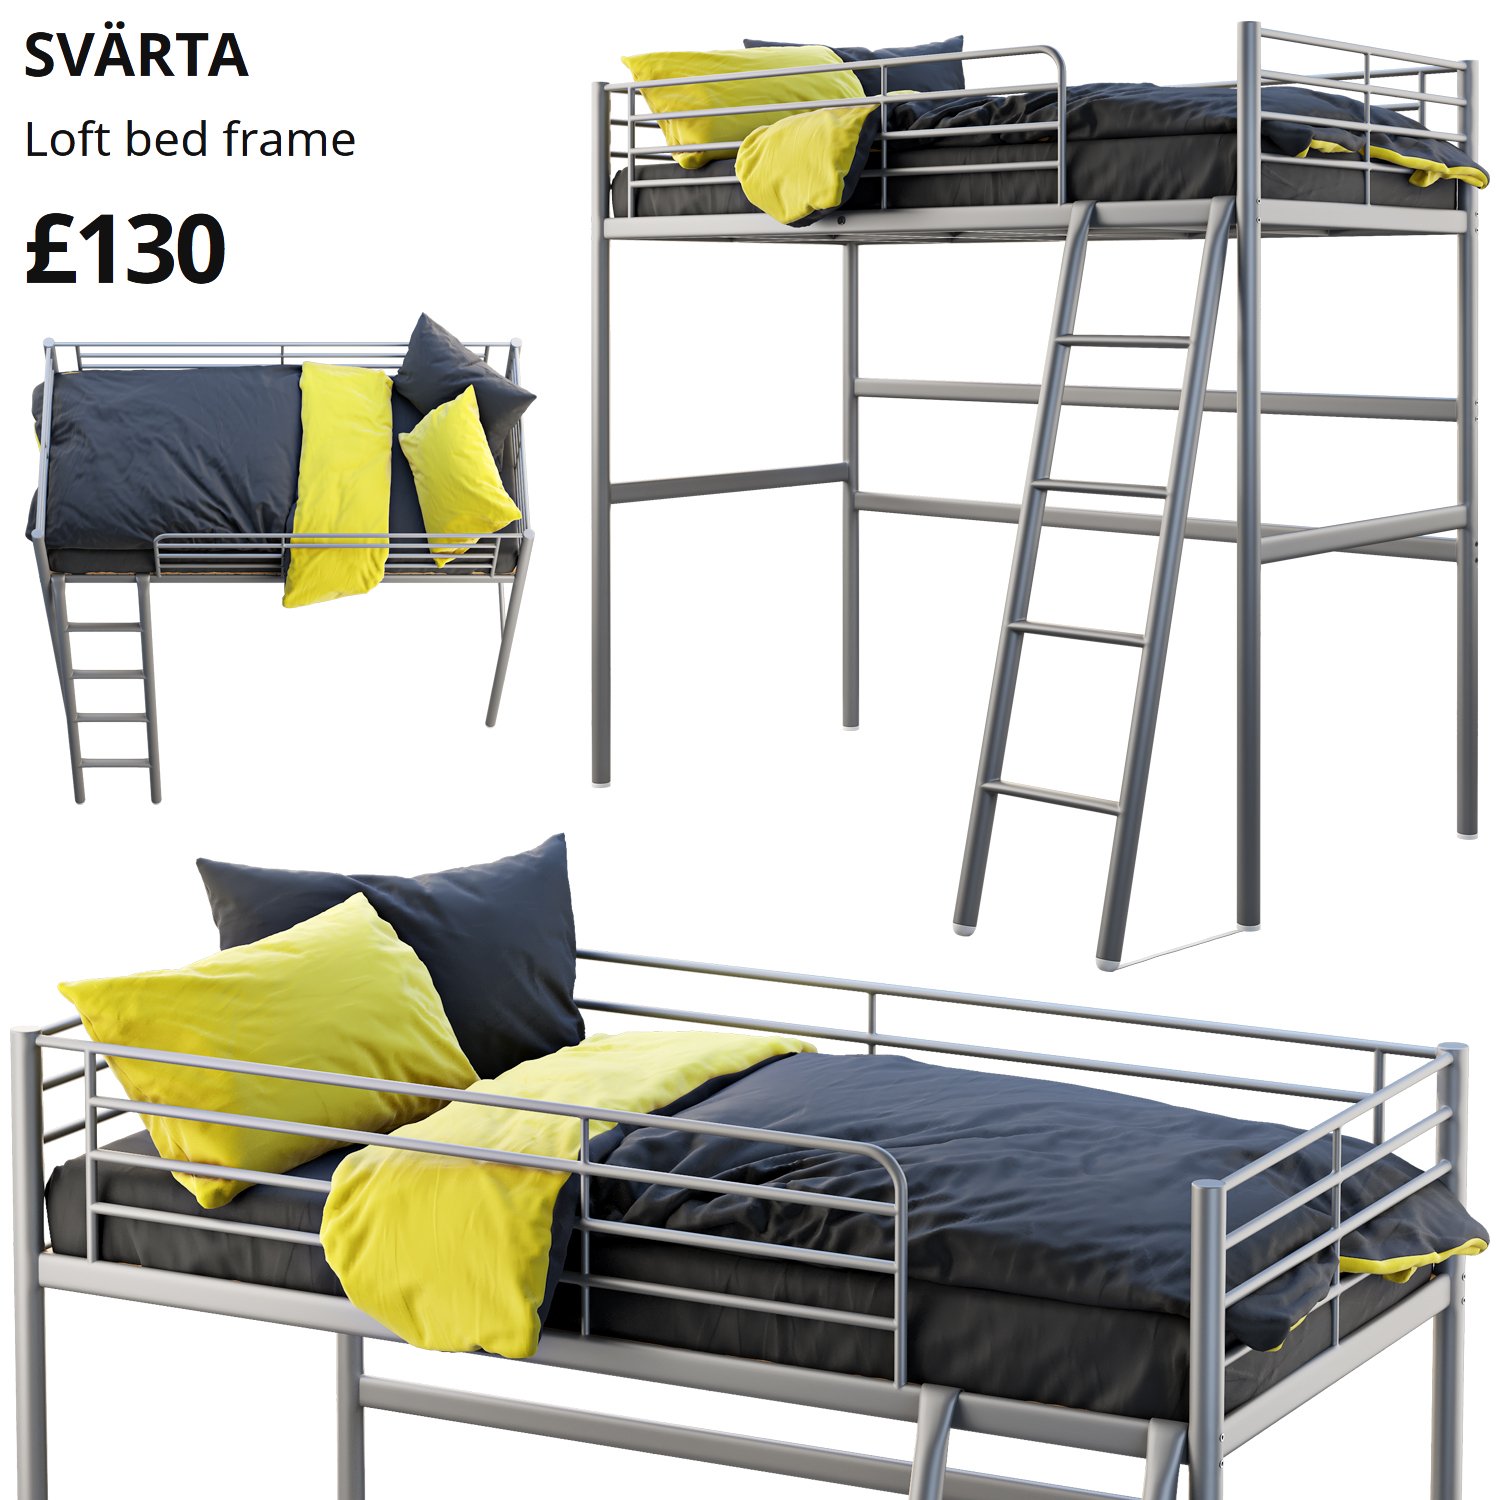 Ikea Svarta Loft Bed 3d Model In Bedroom 3dexport